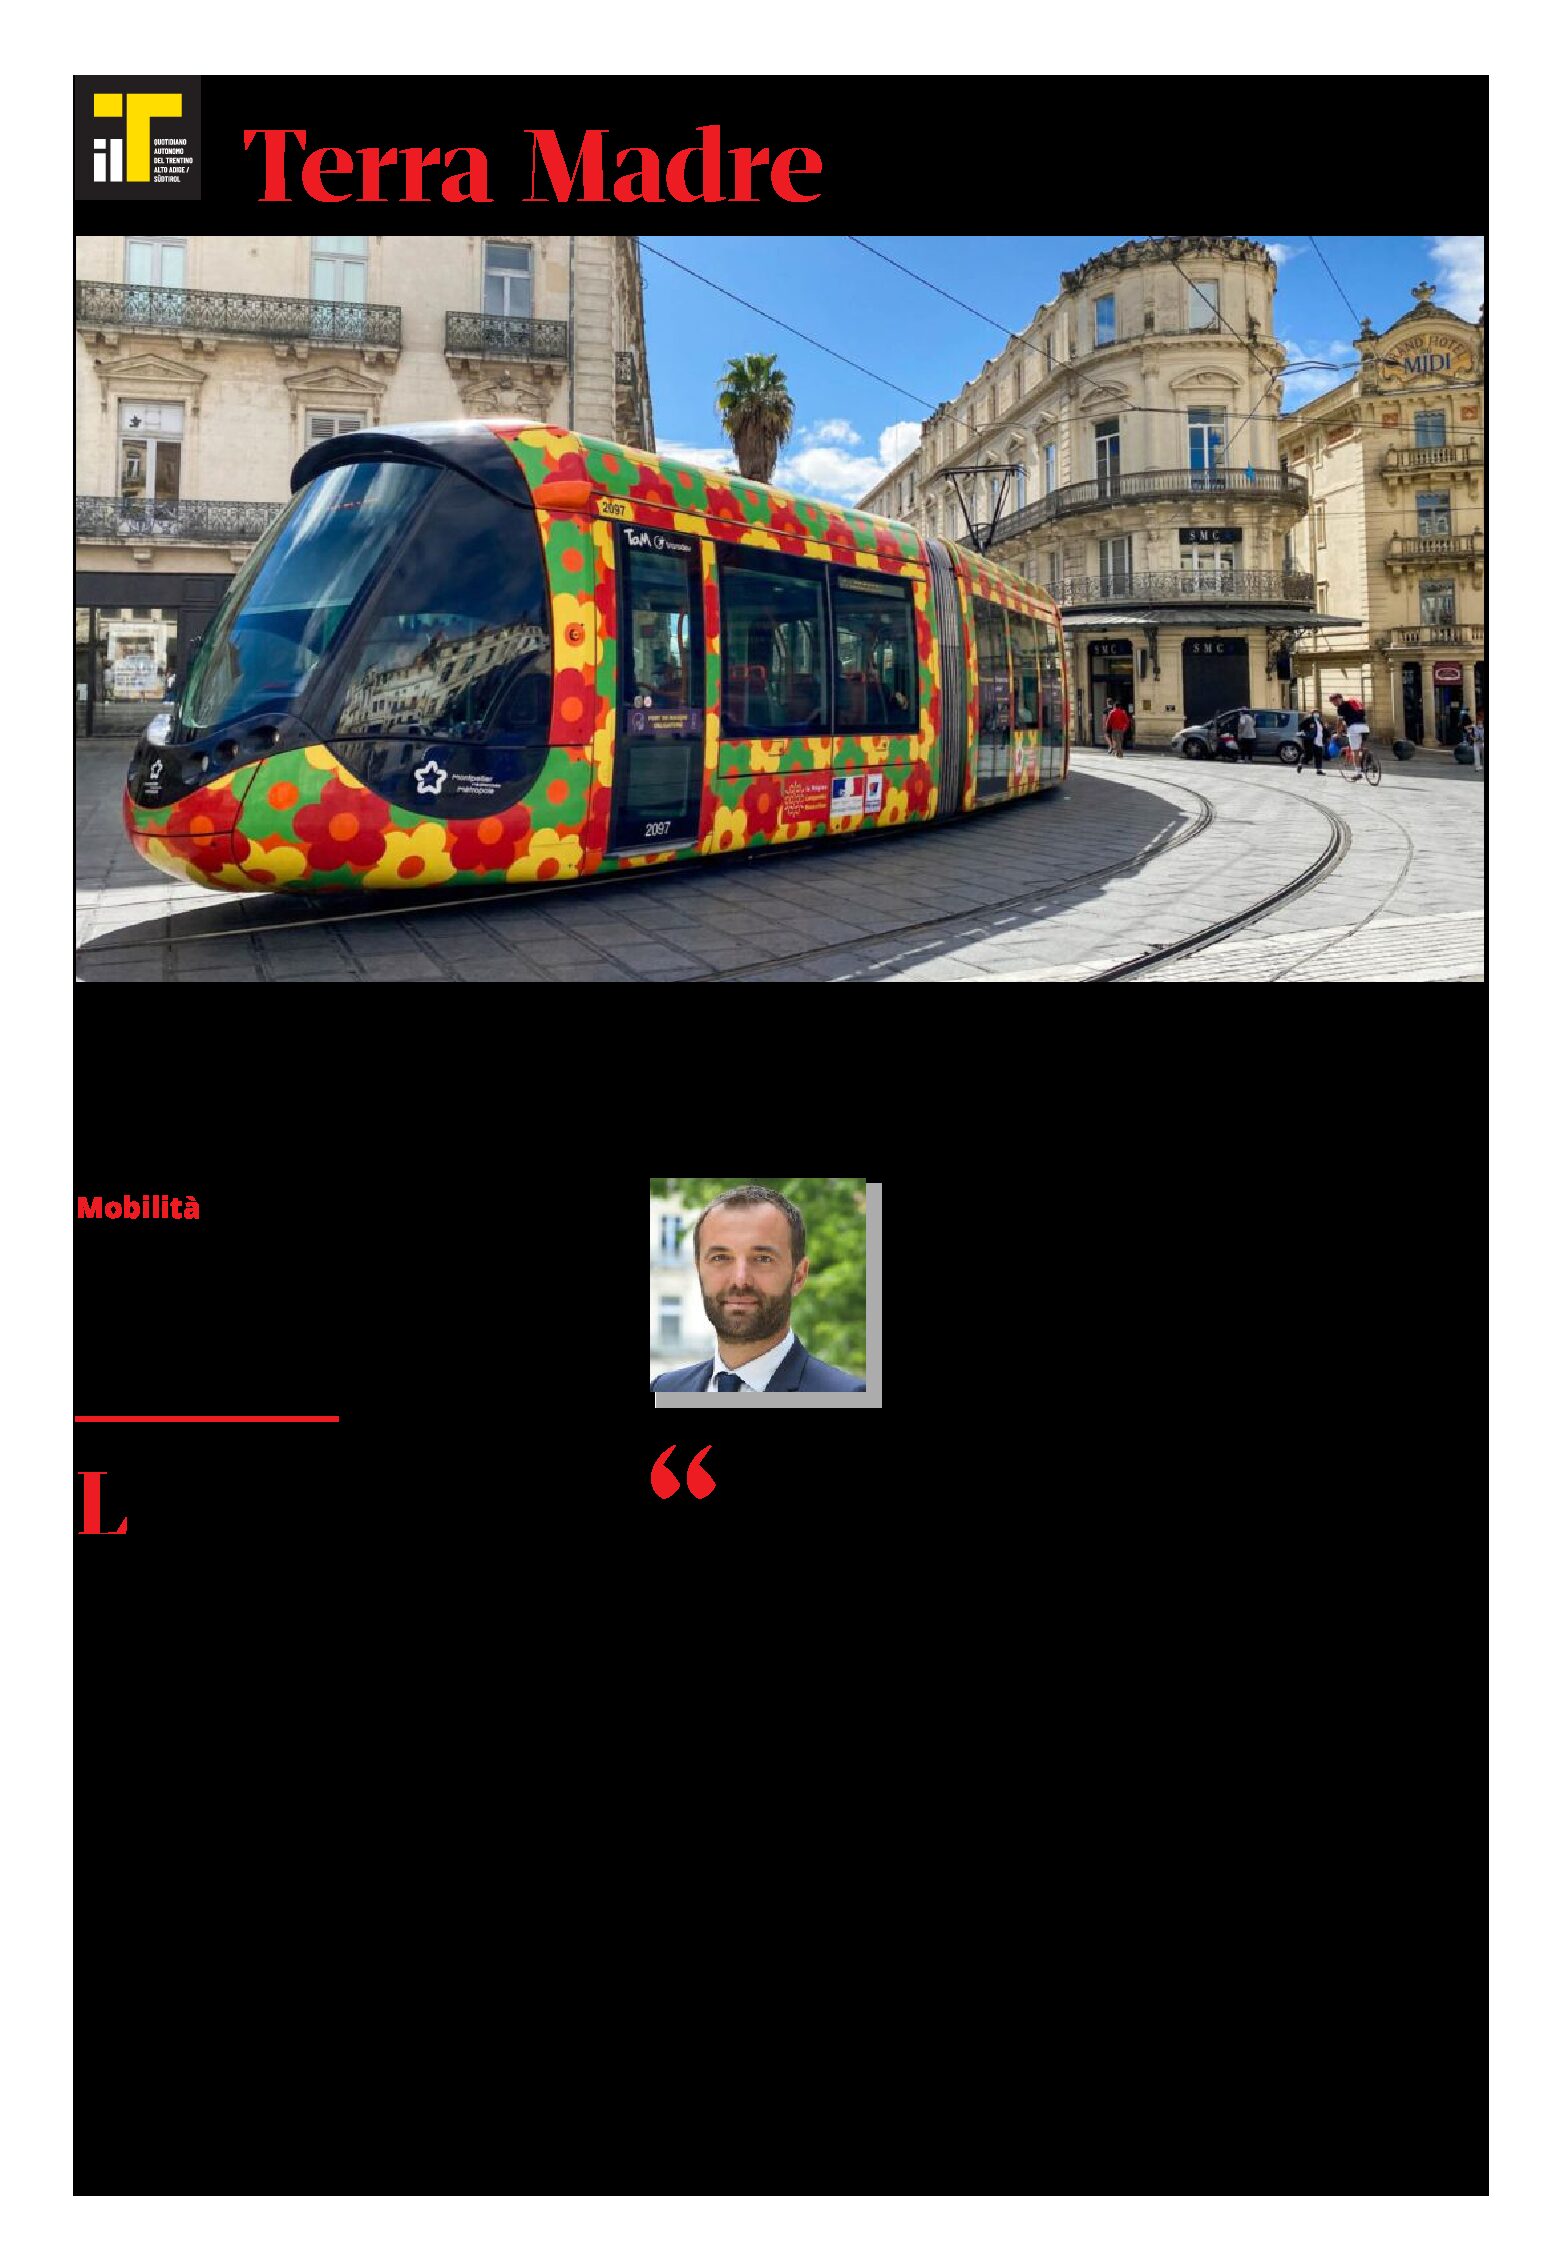 Trasporto pubblico: a Montpellier è gratis. Intervista al sindaco Delafosse